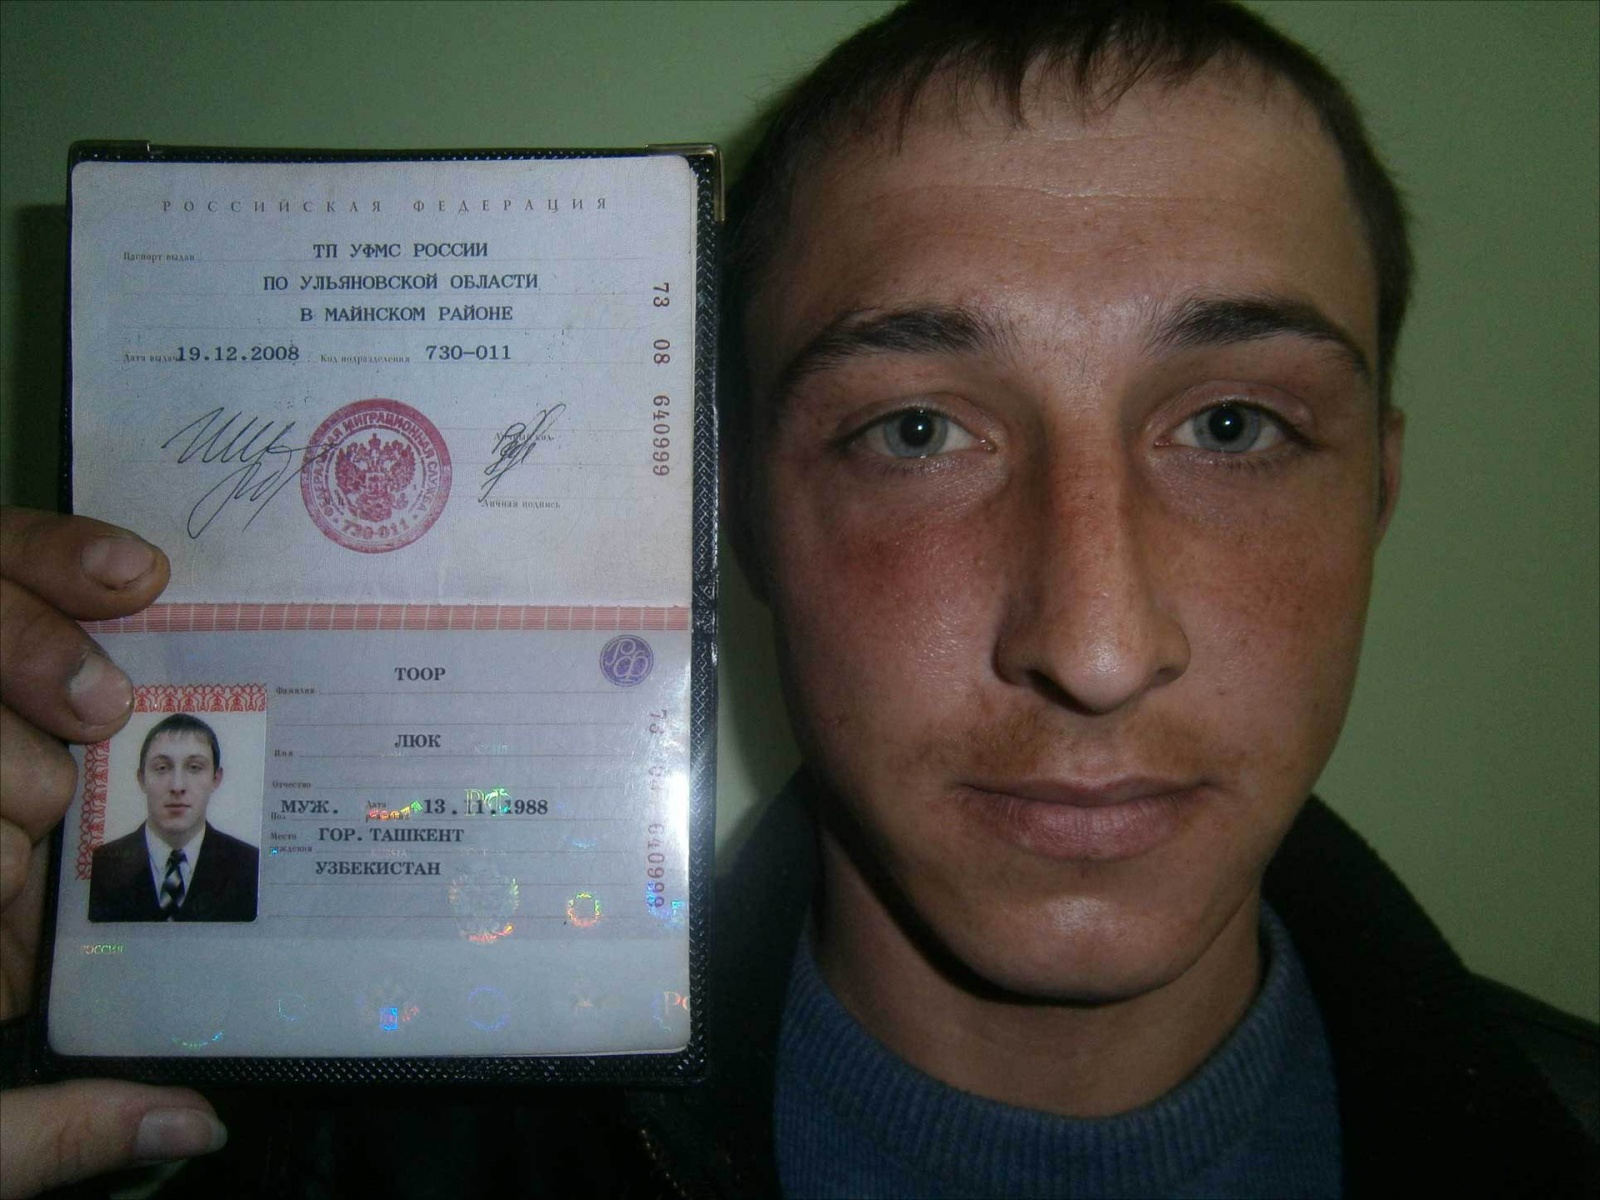 Что можно сделать по фото паспорта другого человека